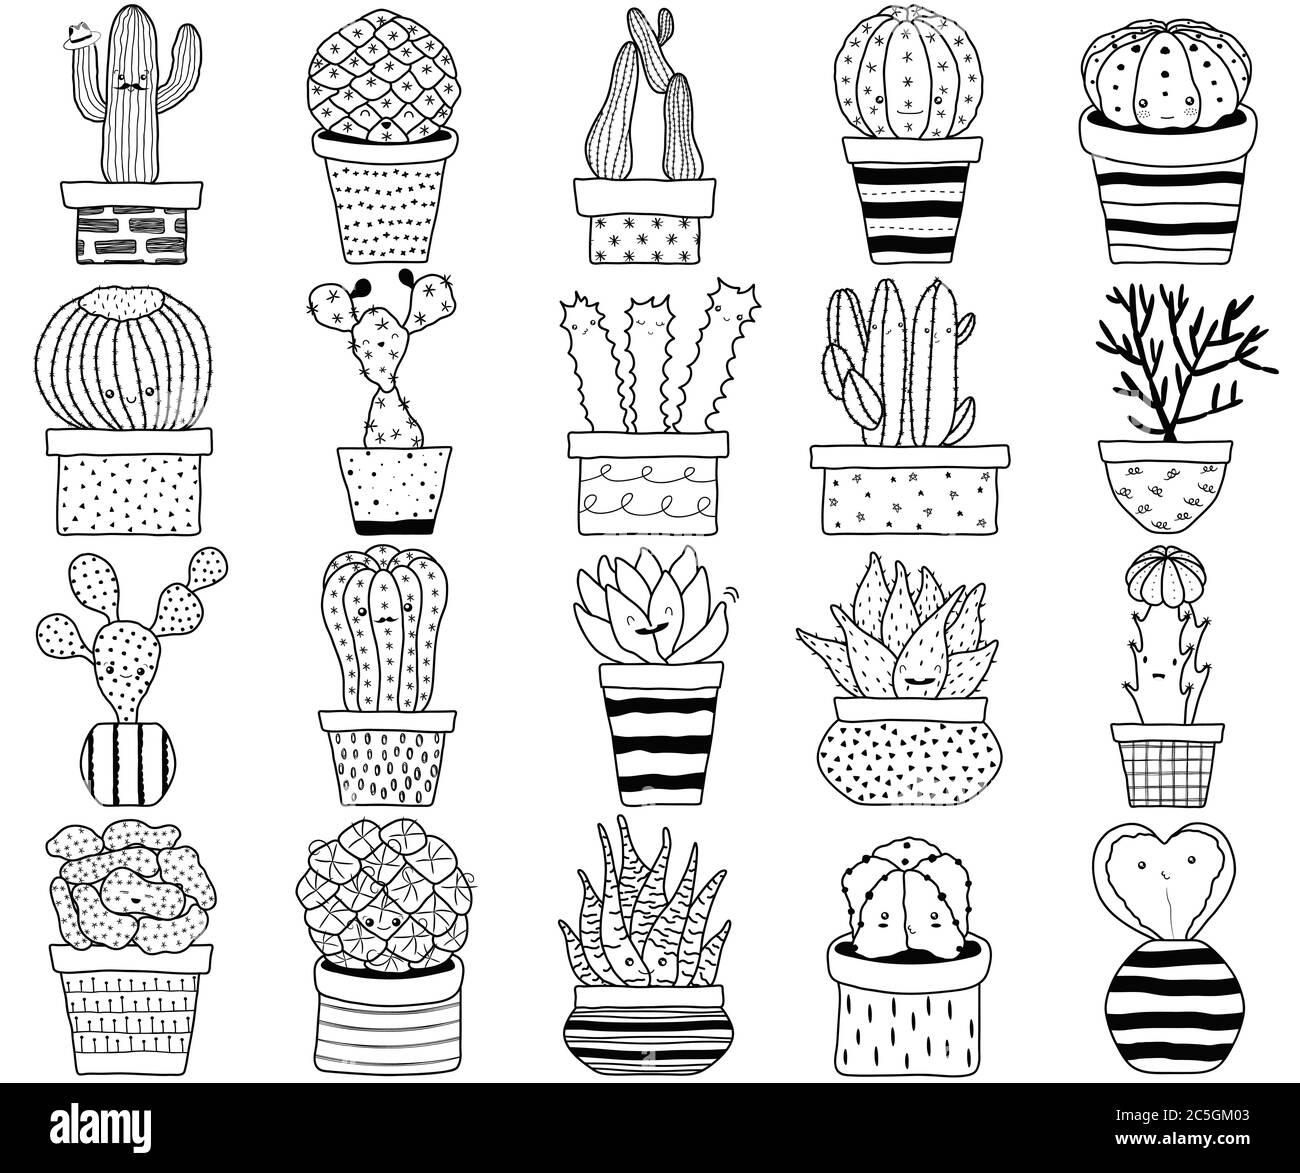 Serie vettoriale di cactus cactus aloe piante succulente con viso in vaso. Collezione di doodle bianco nero mano disegnata esotica pianta domestica. L'illustrazione carina è Illustrazione Vettoriale